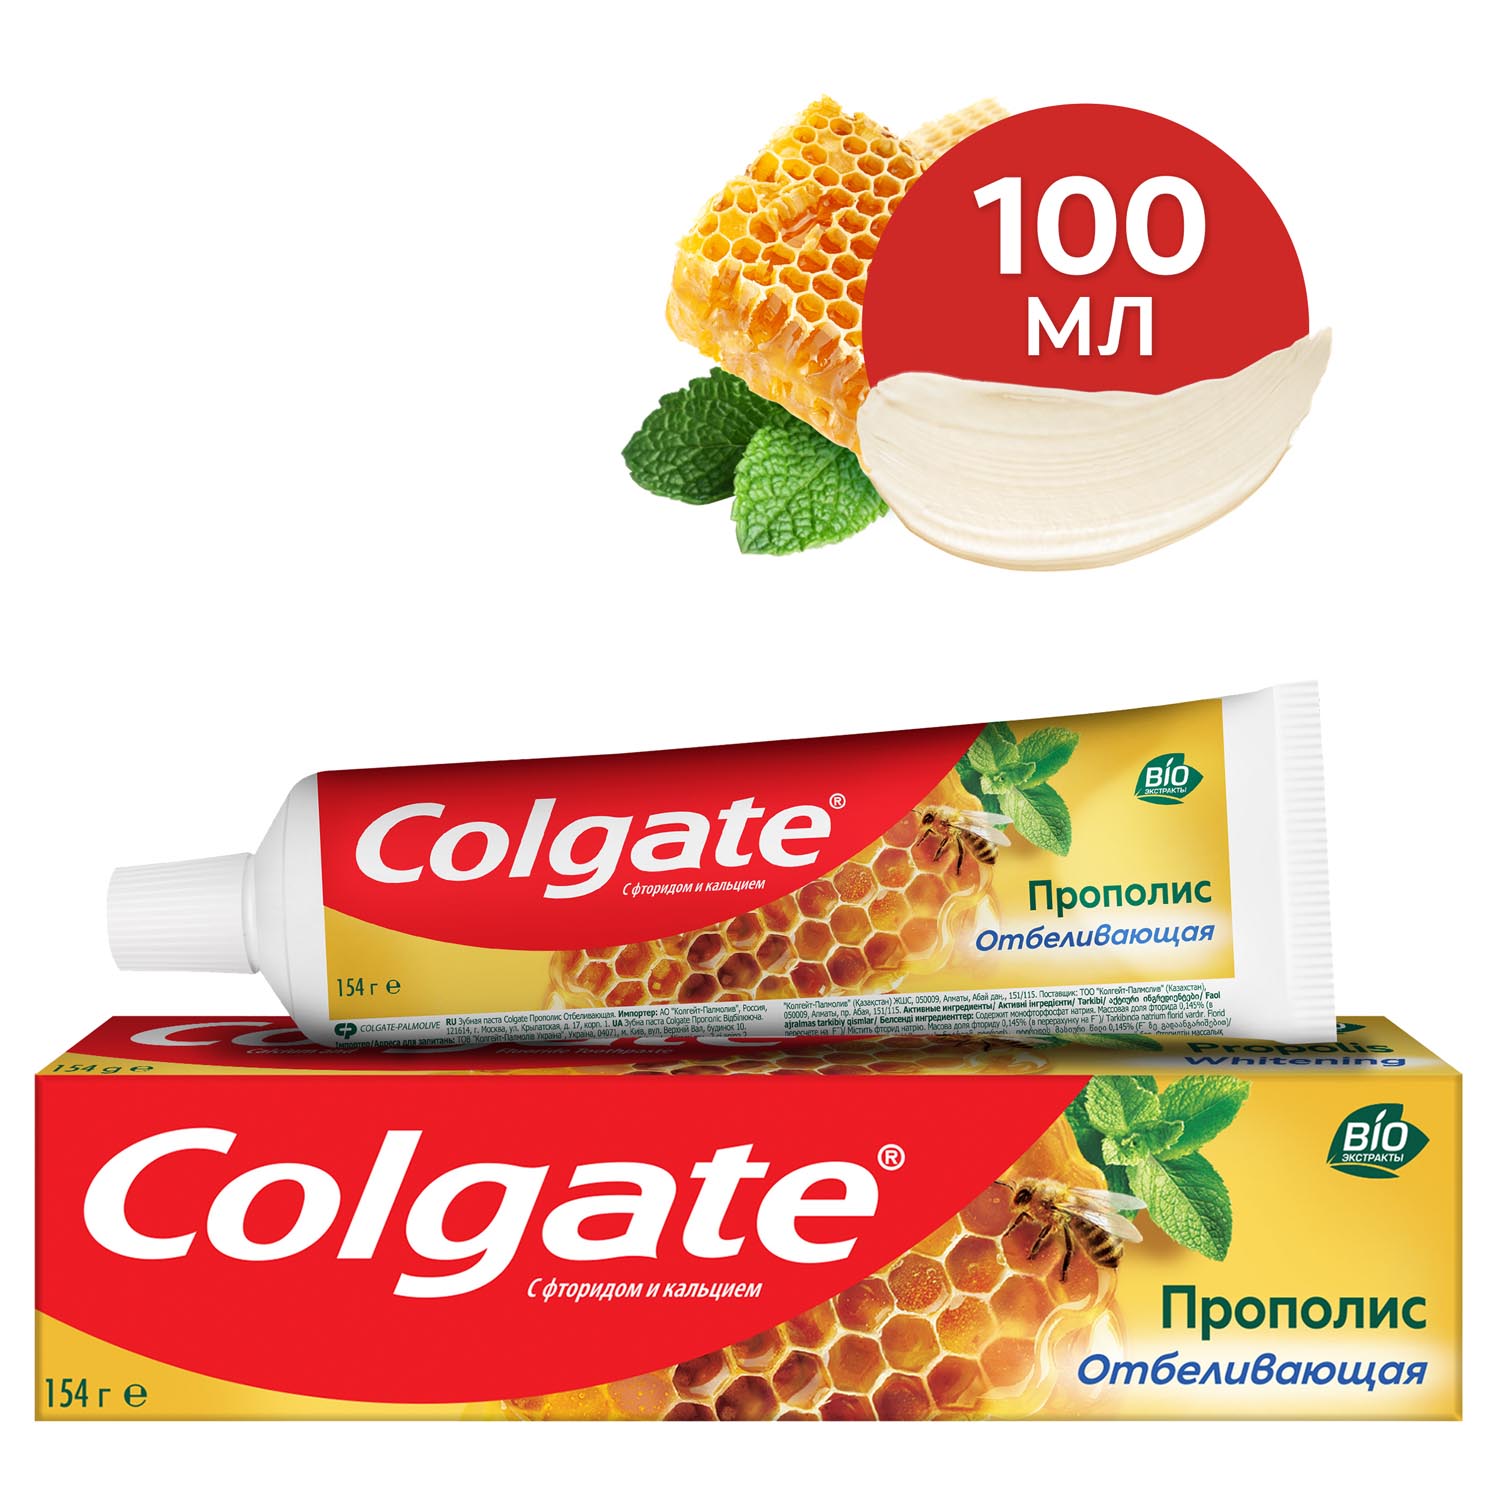 Зубная паста Colgate Прополис отбеливающая с натуральными ингредиентами для бережного отбеливания зубов и сохранения здоровья десен, 100 мл wp content